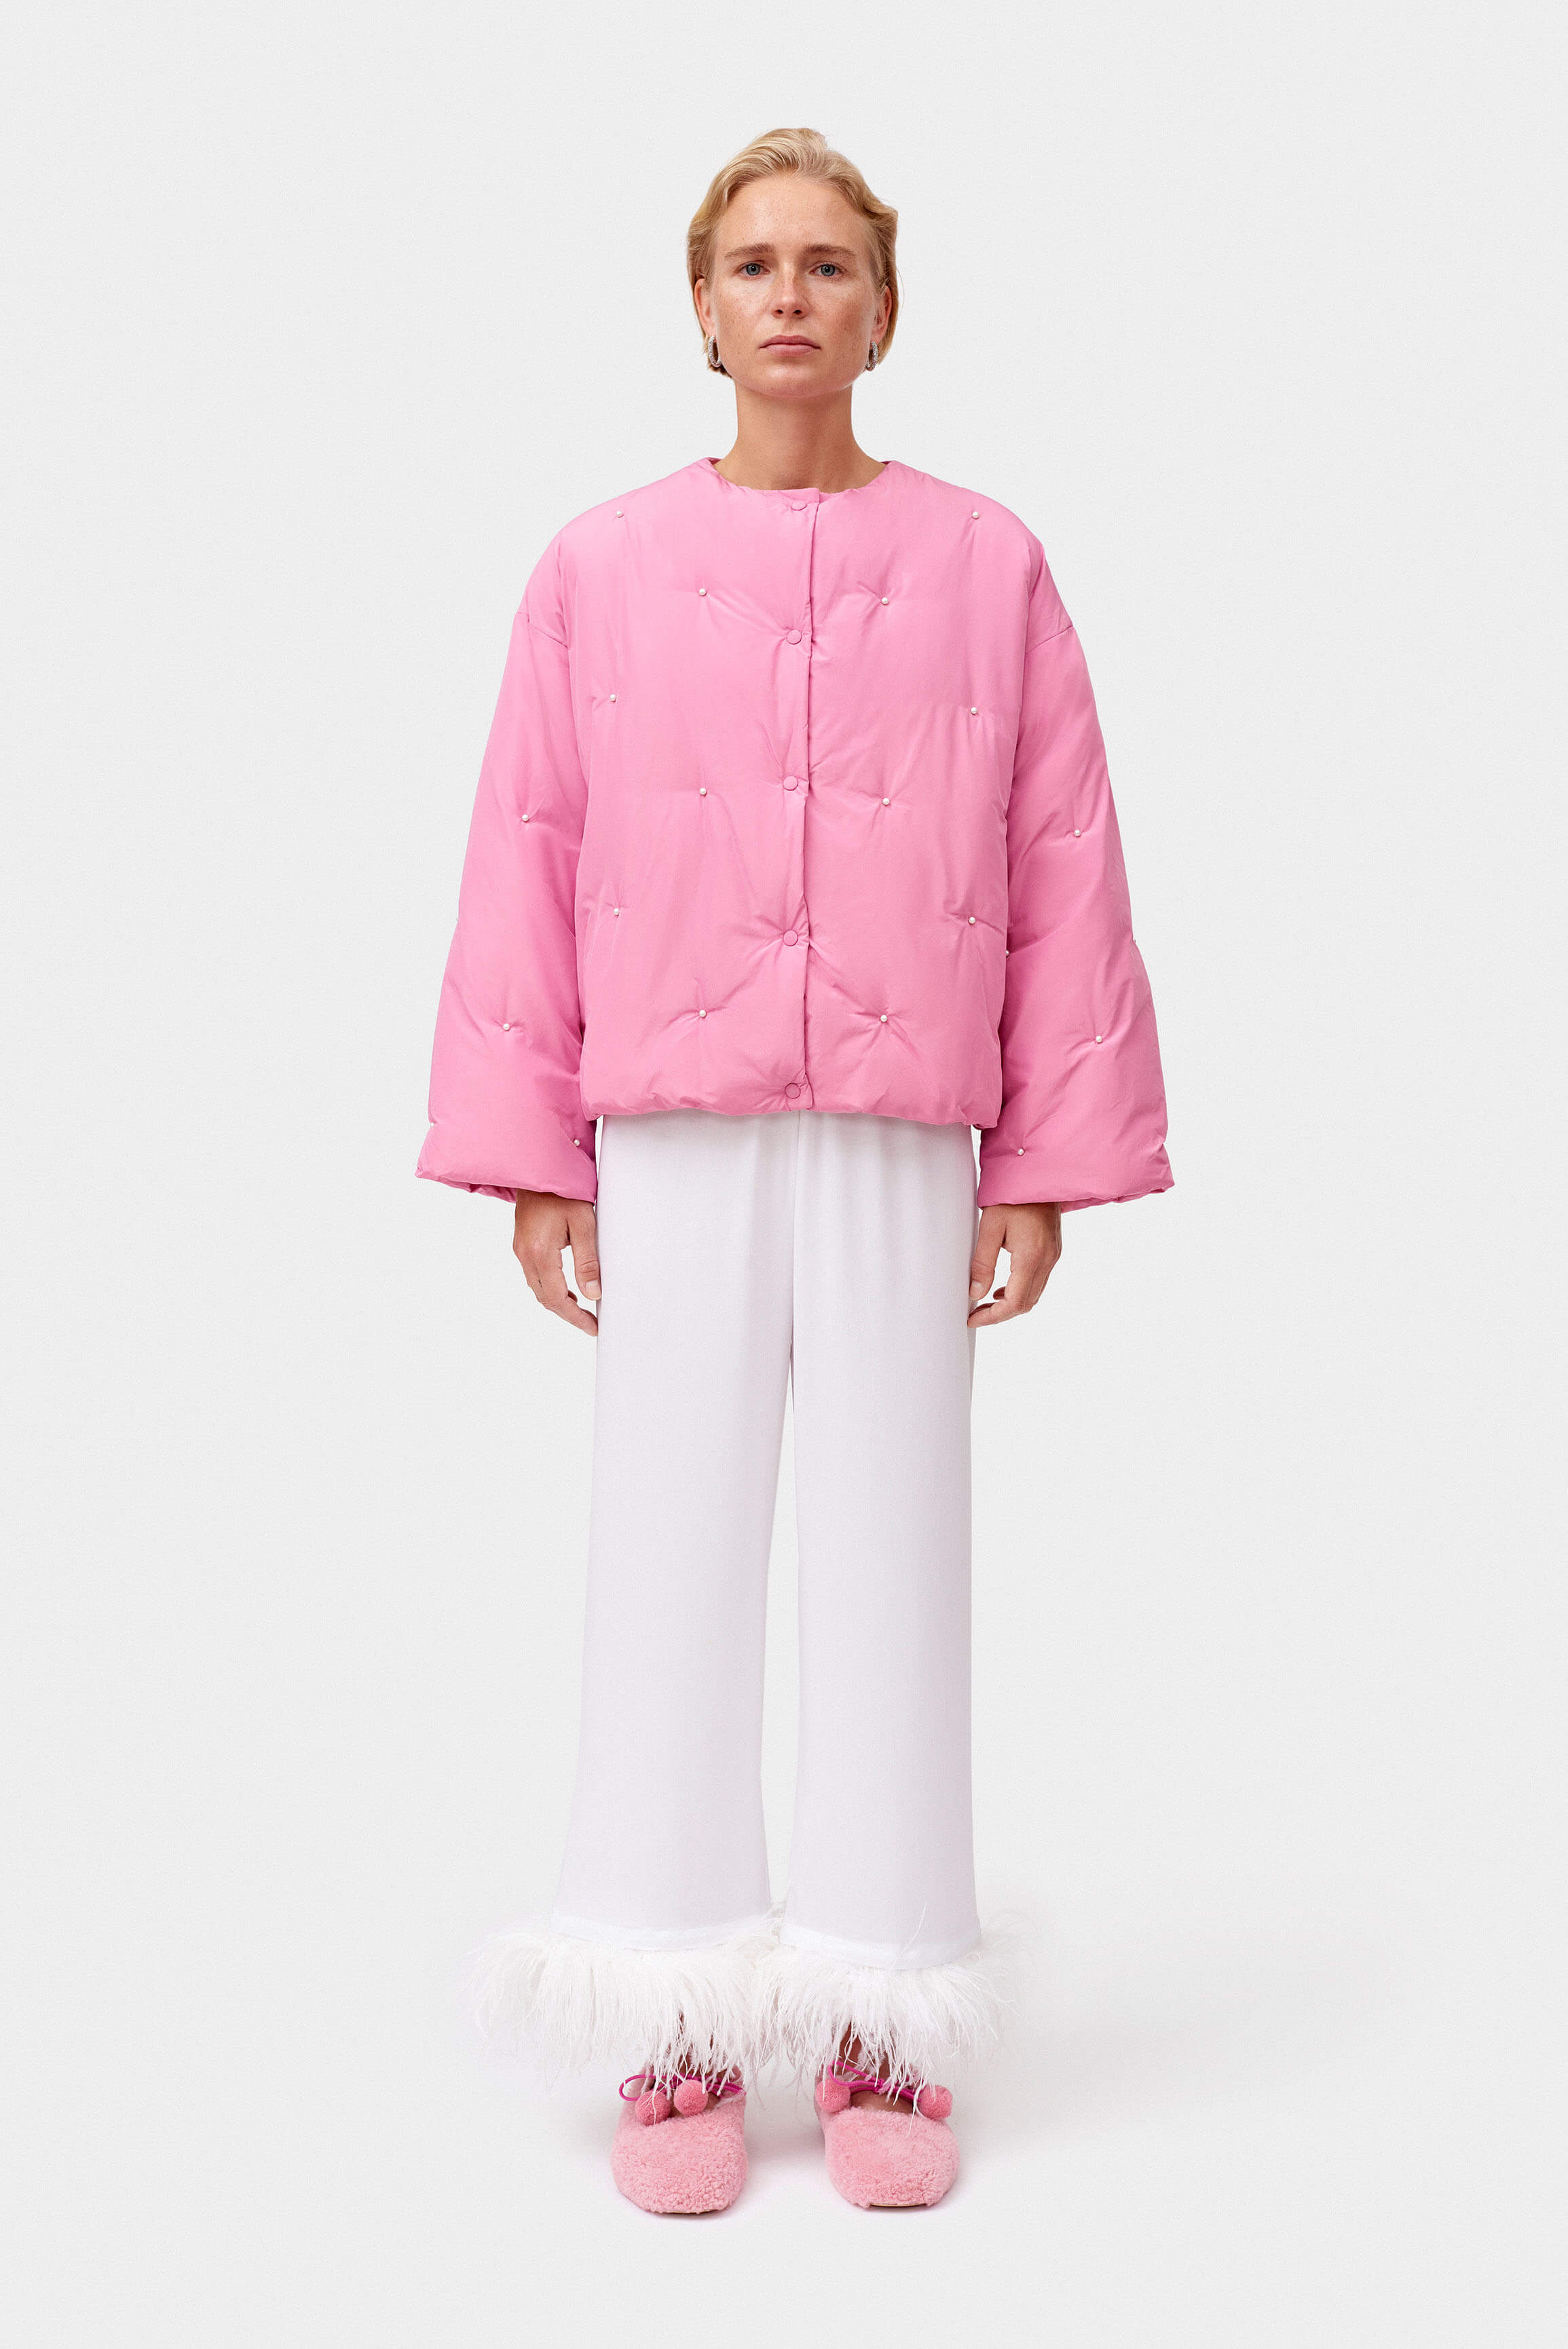 Cropped pink puffer jacket | Women's light pastel pink jacket